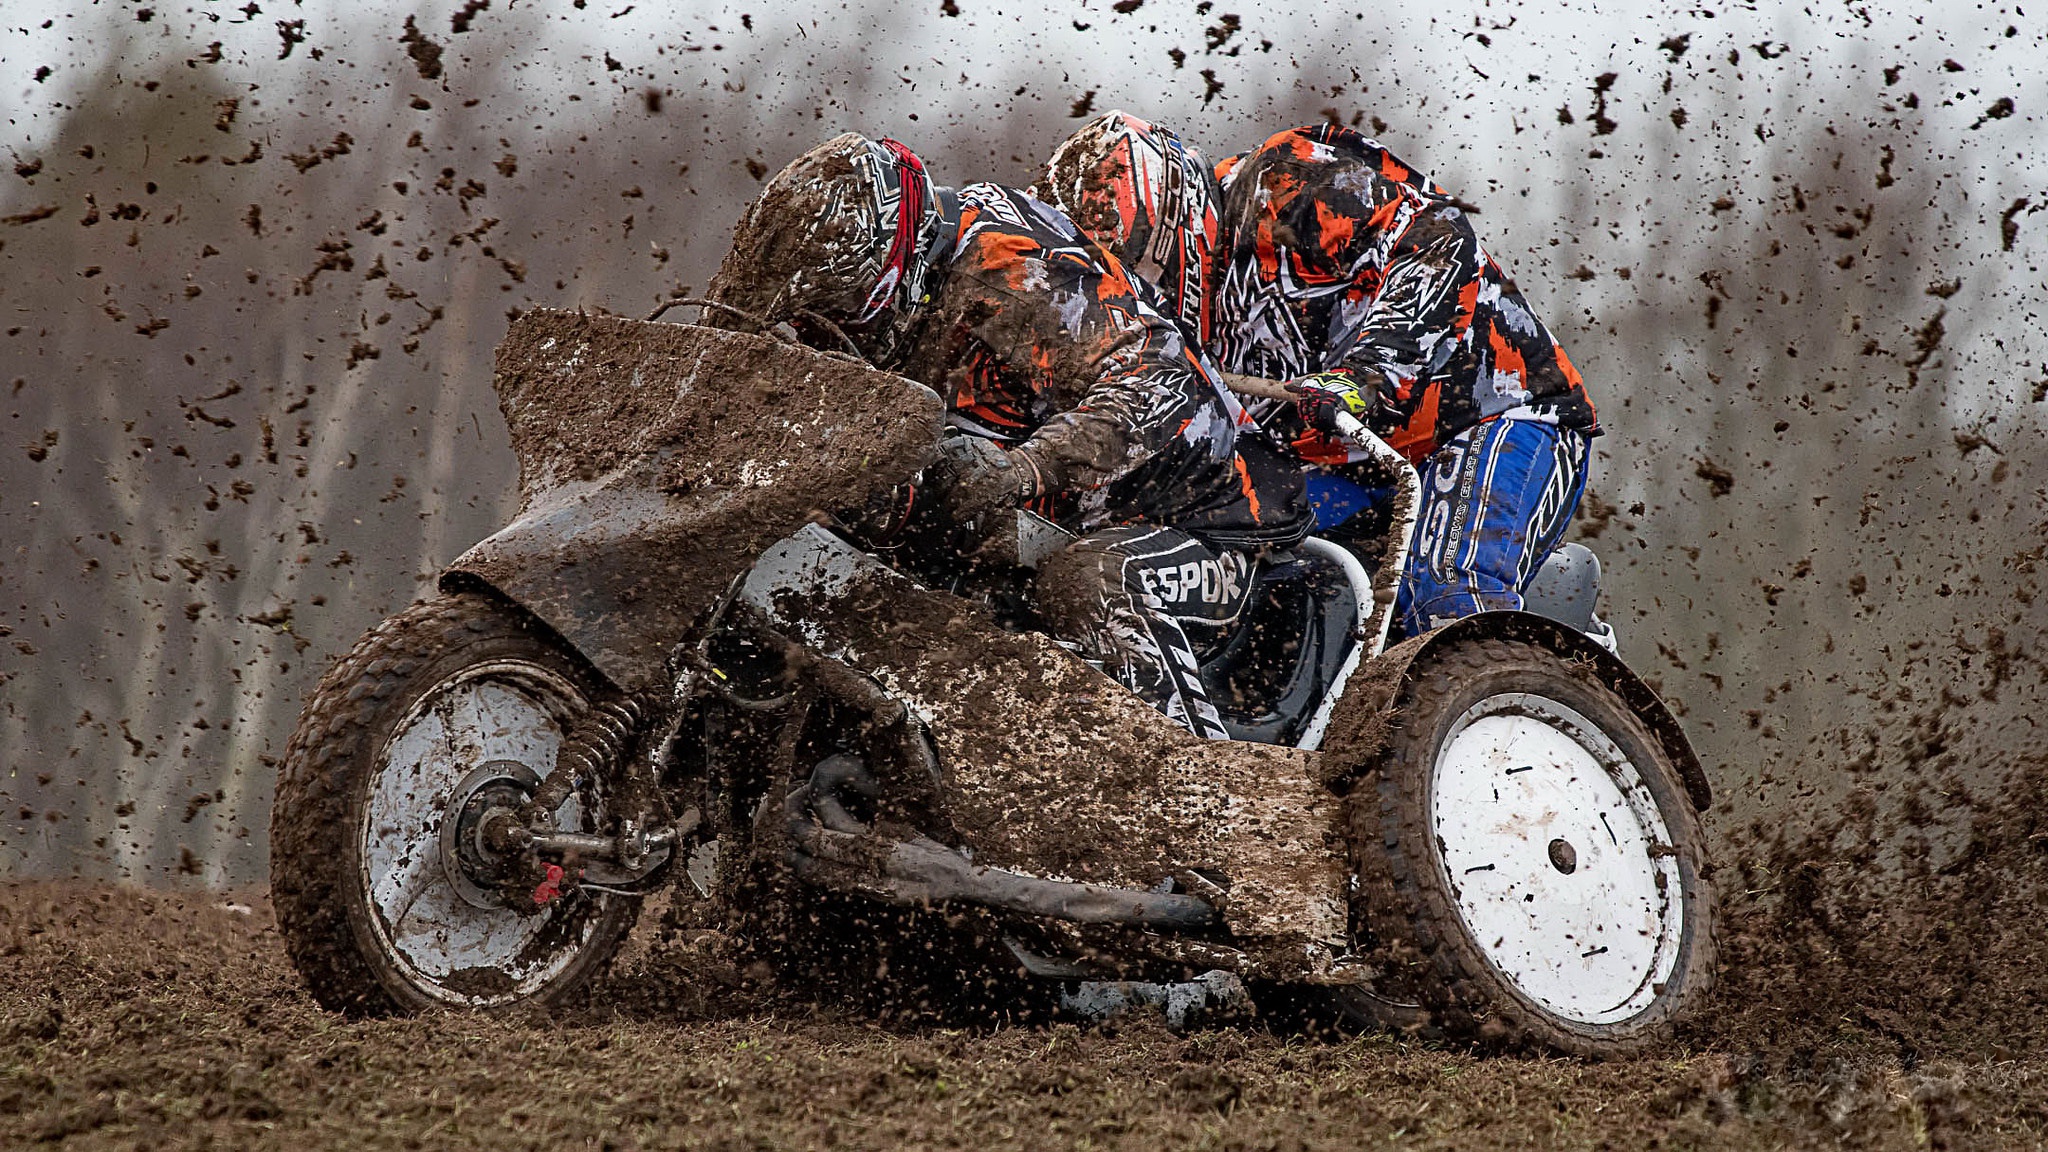 General 2048x1152 dirt mud racing motorcycle